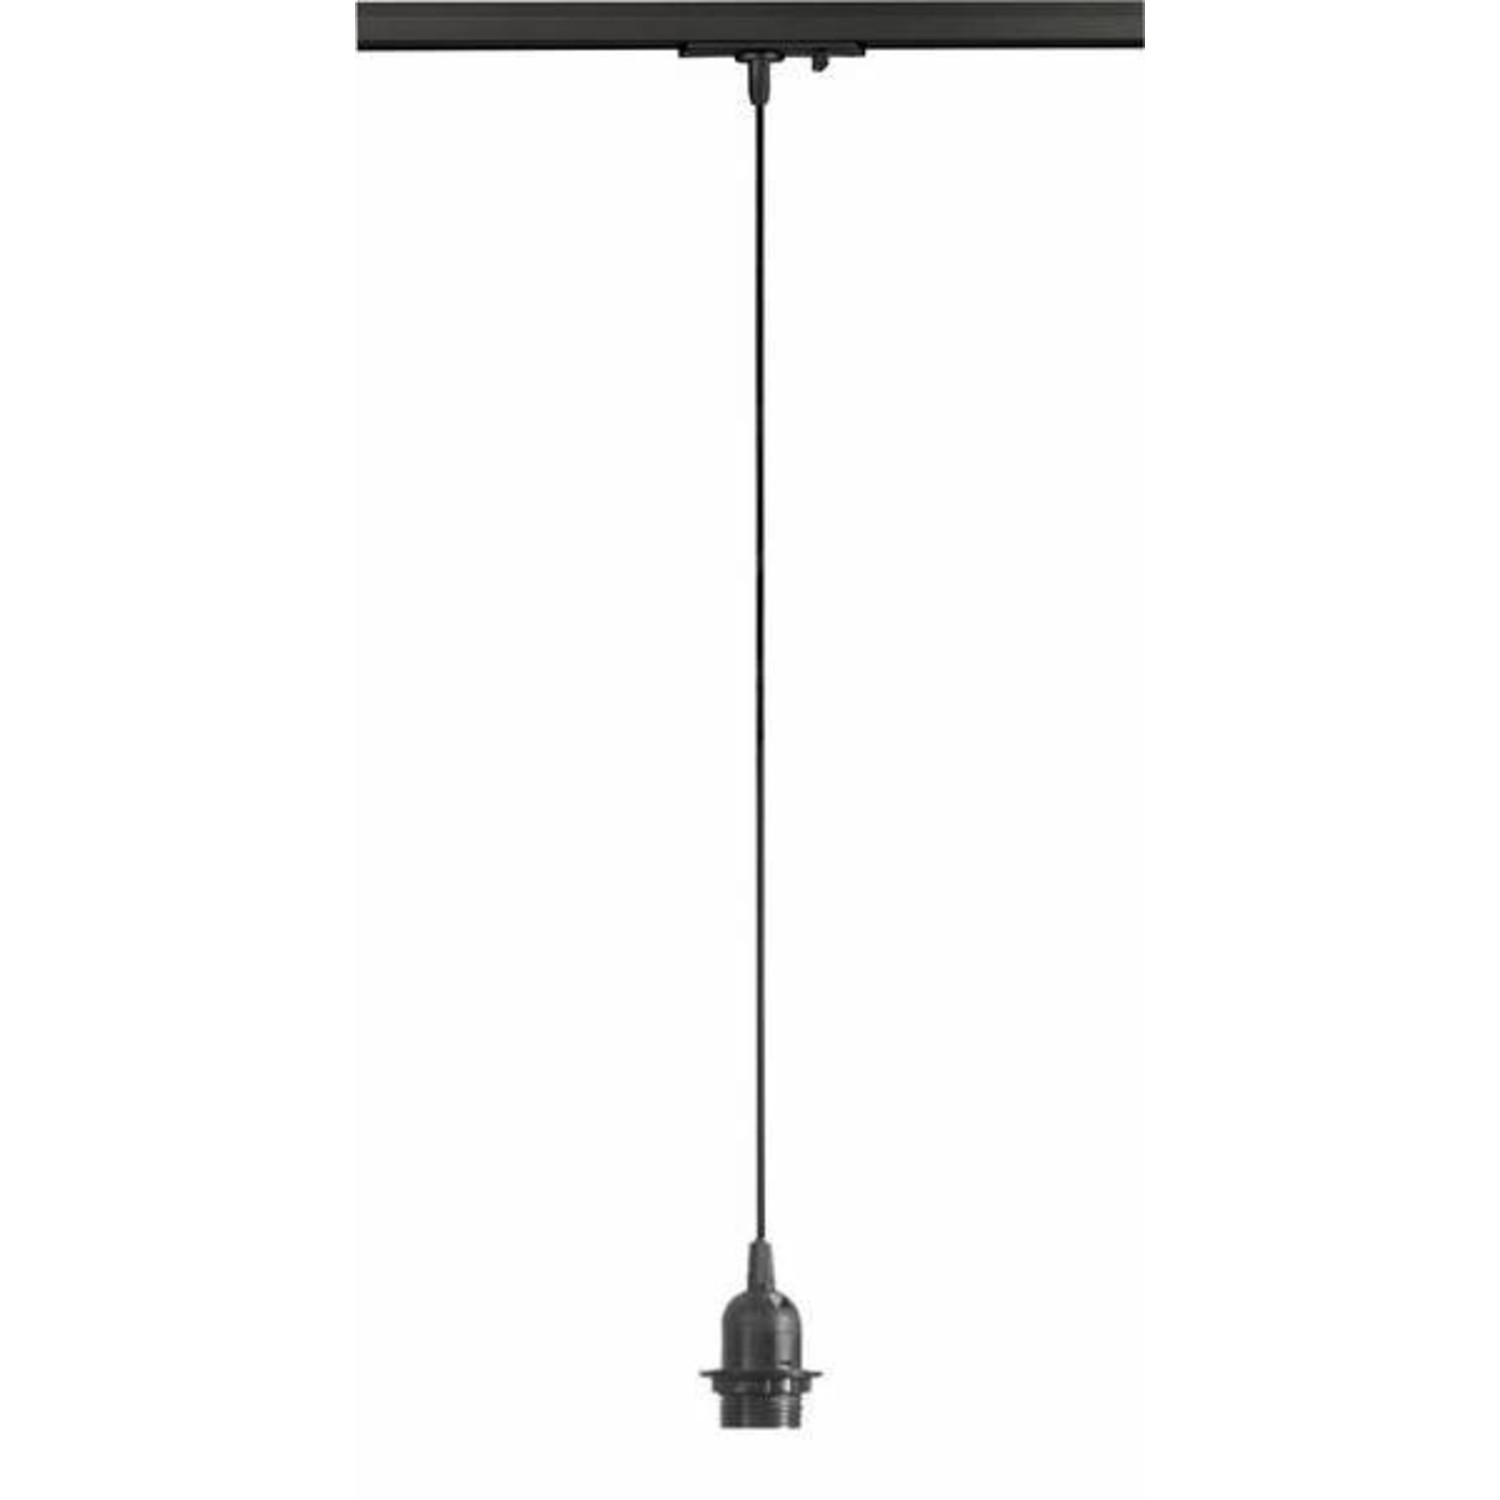 Berg Vesuvius Kenia pasta LED Railspot 1 meter pendel zwart - E27 fitting - Universeel 3-Phase -  Ledlichtdiscounter.nl